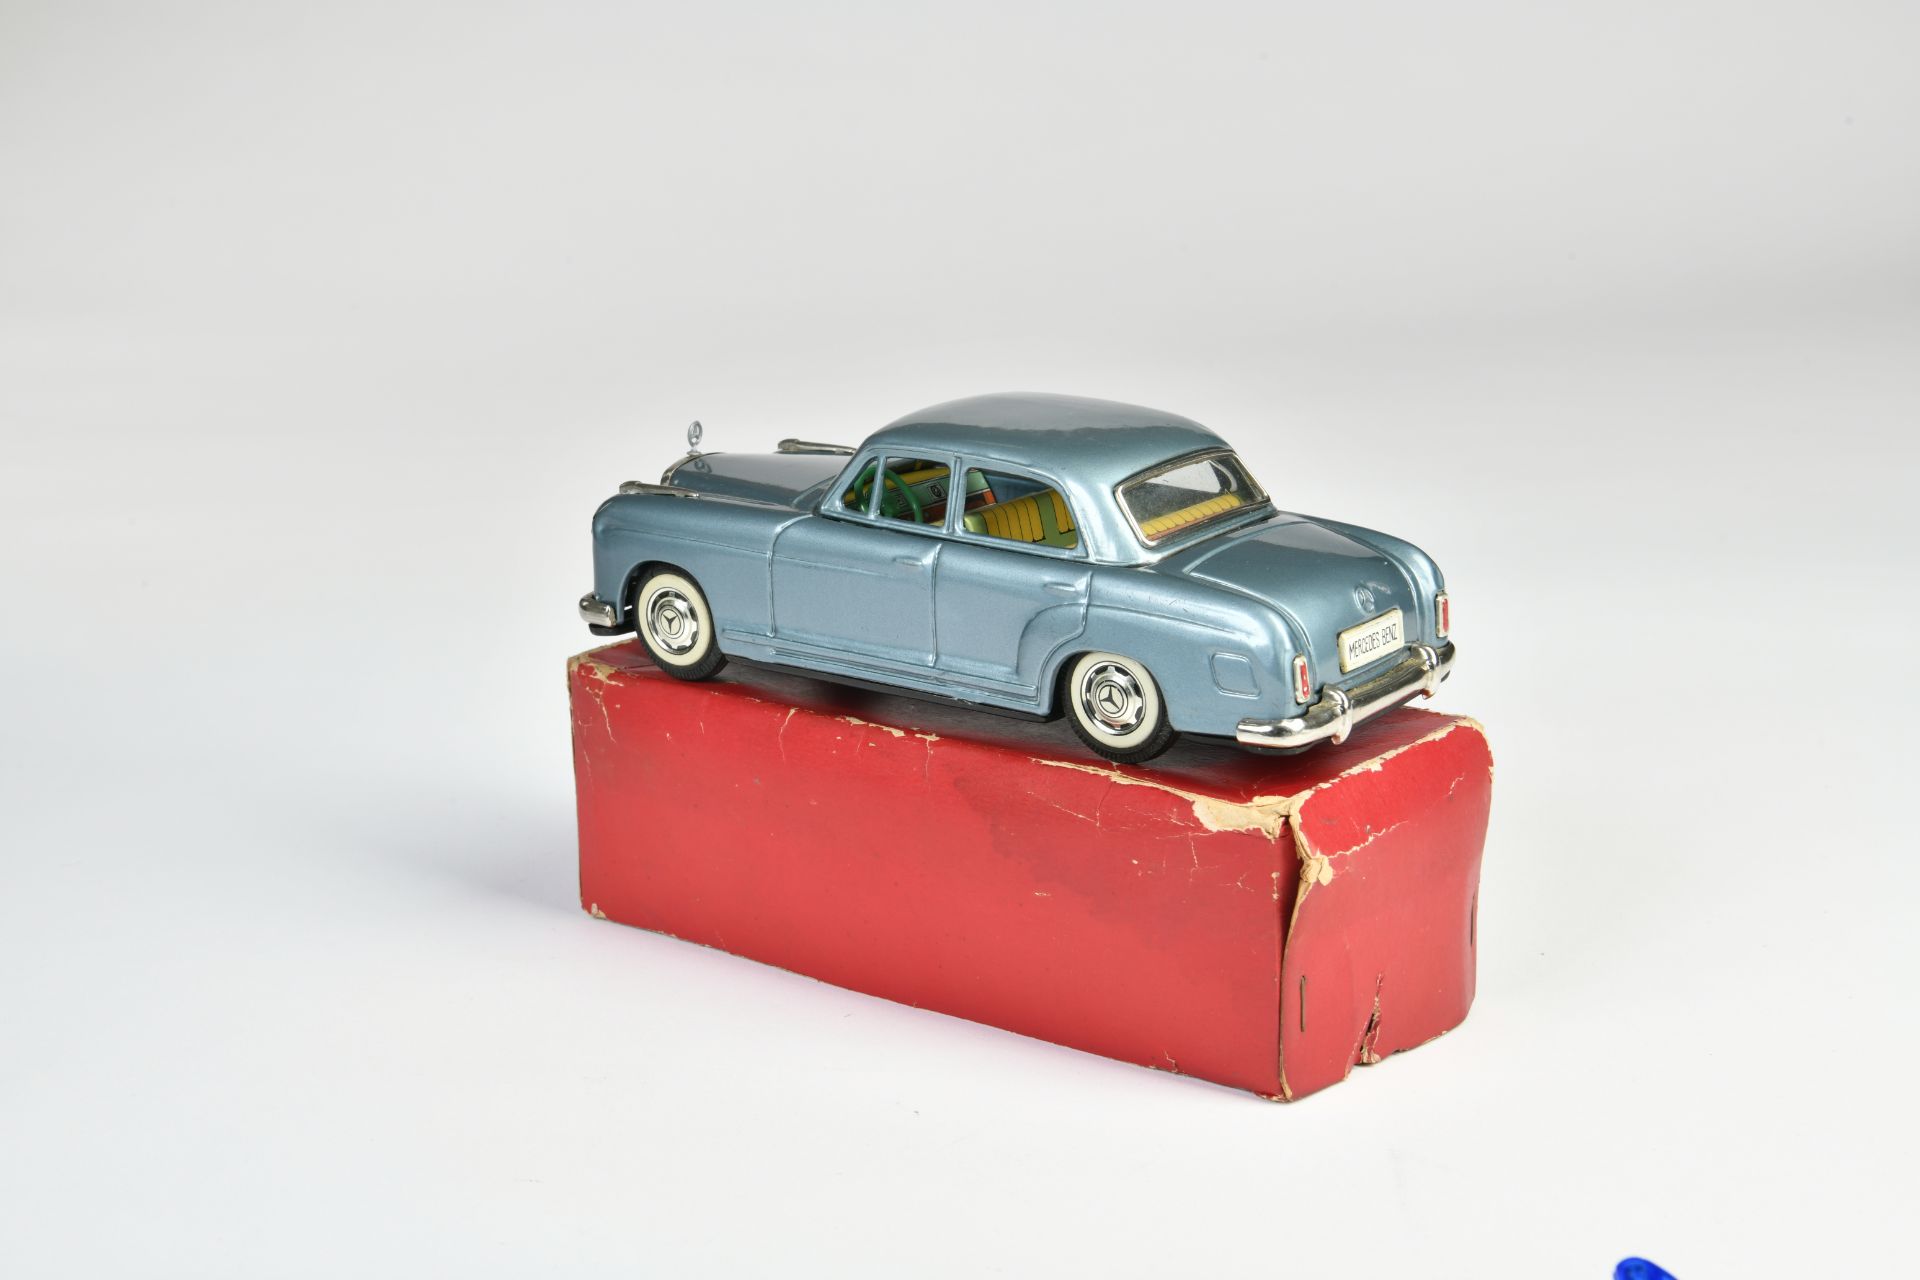 Bandai, Mercedes Benz, Japan, 20 cm, tin, friction ok, bottom box, C2+, - Image 2 of 2